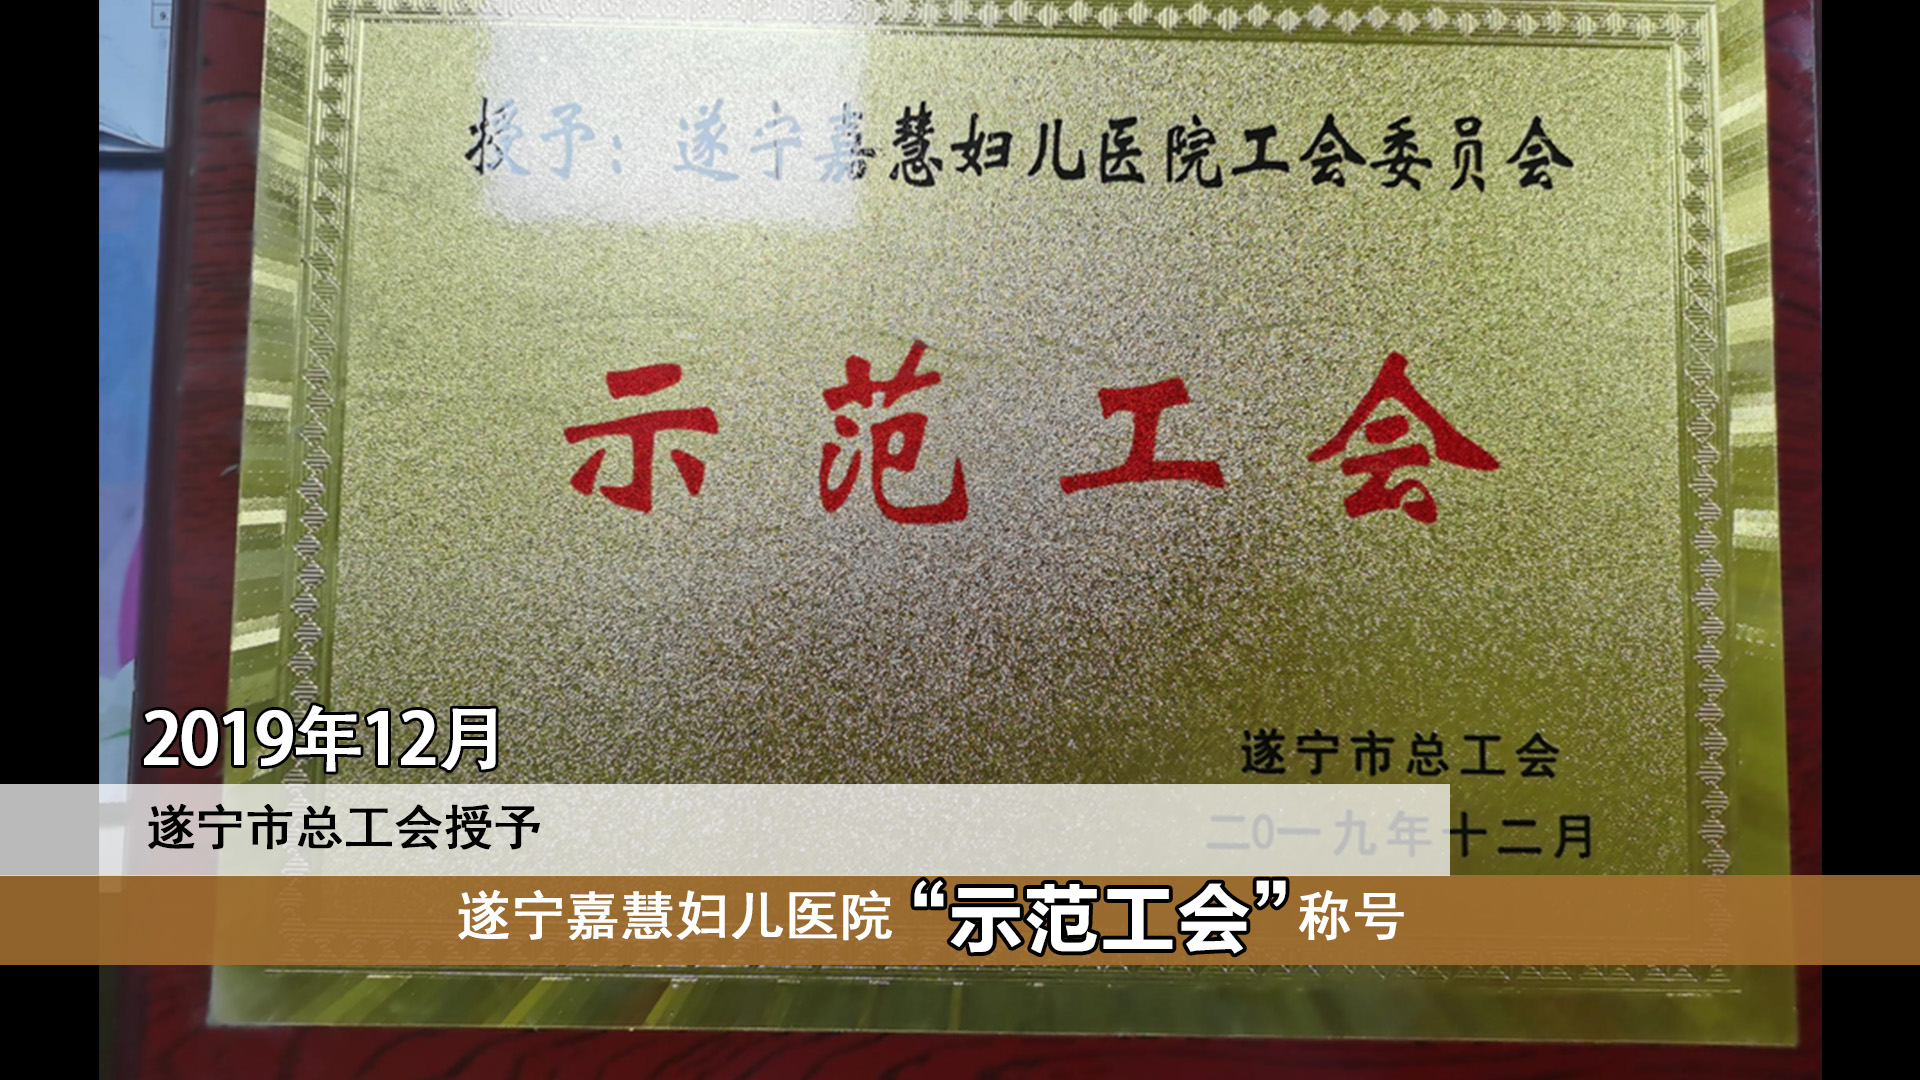 2019年12月，遂宁市总工会授予遂宁嘉慧妇产医院“示范工会”称号